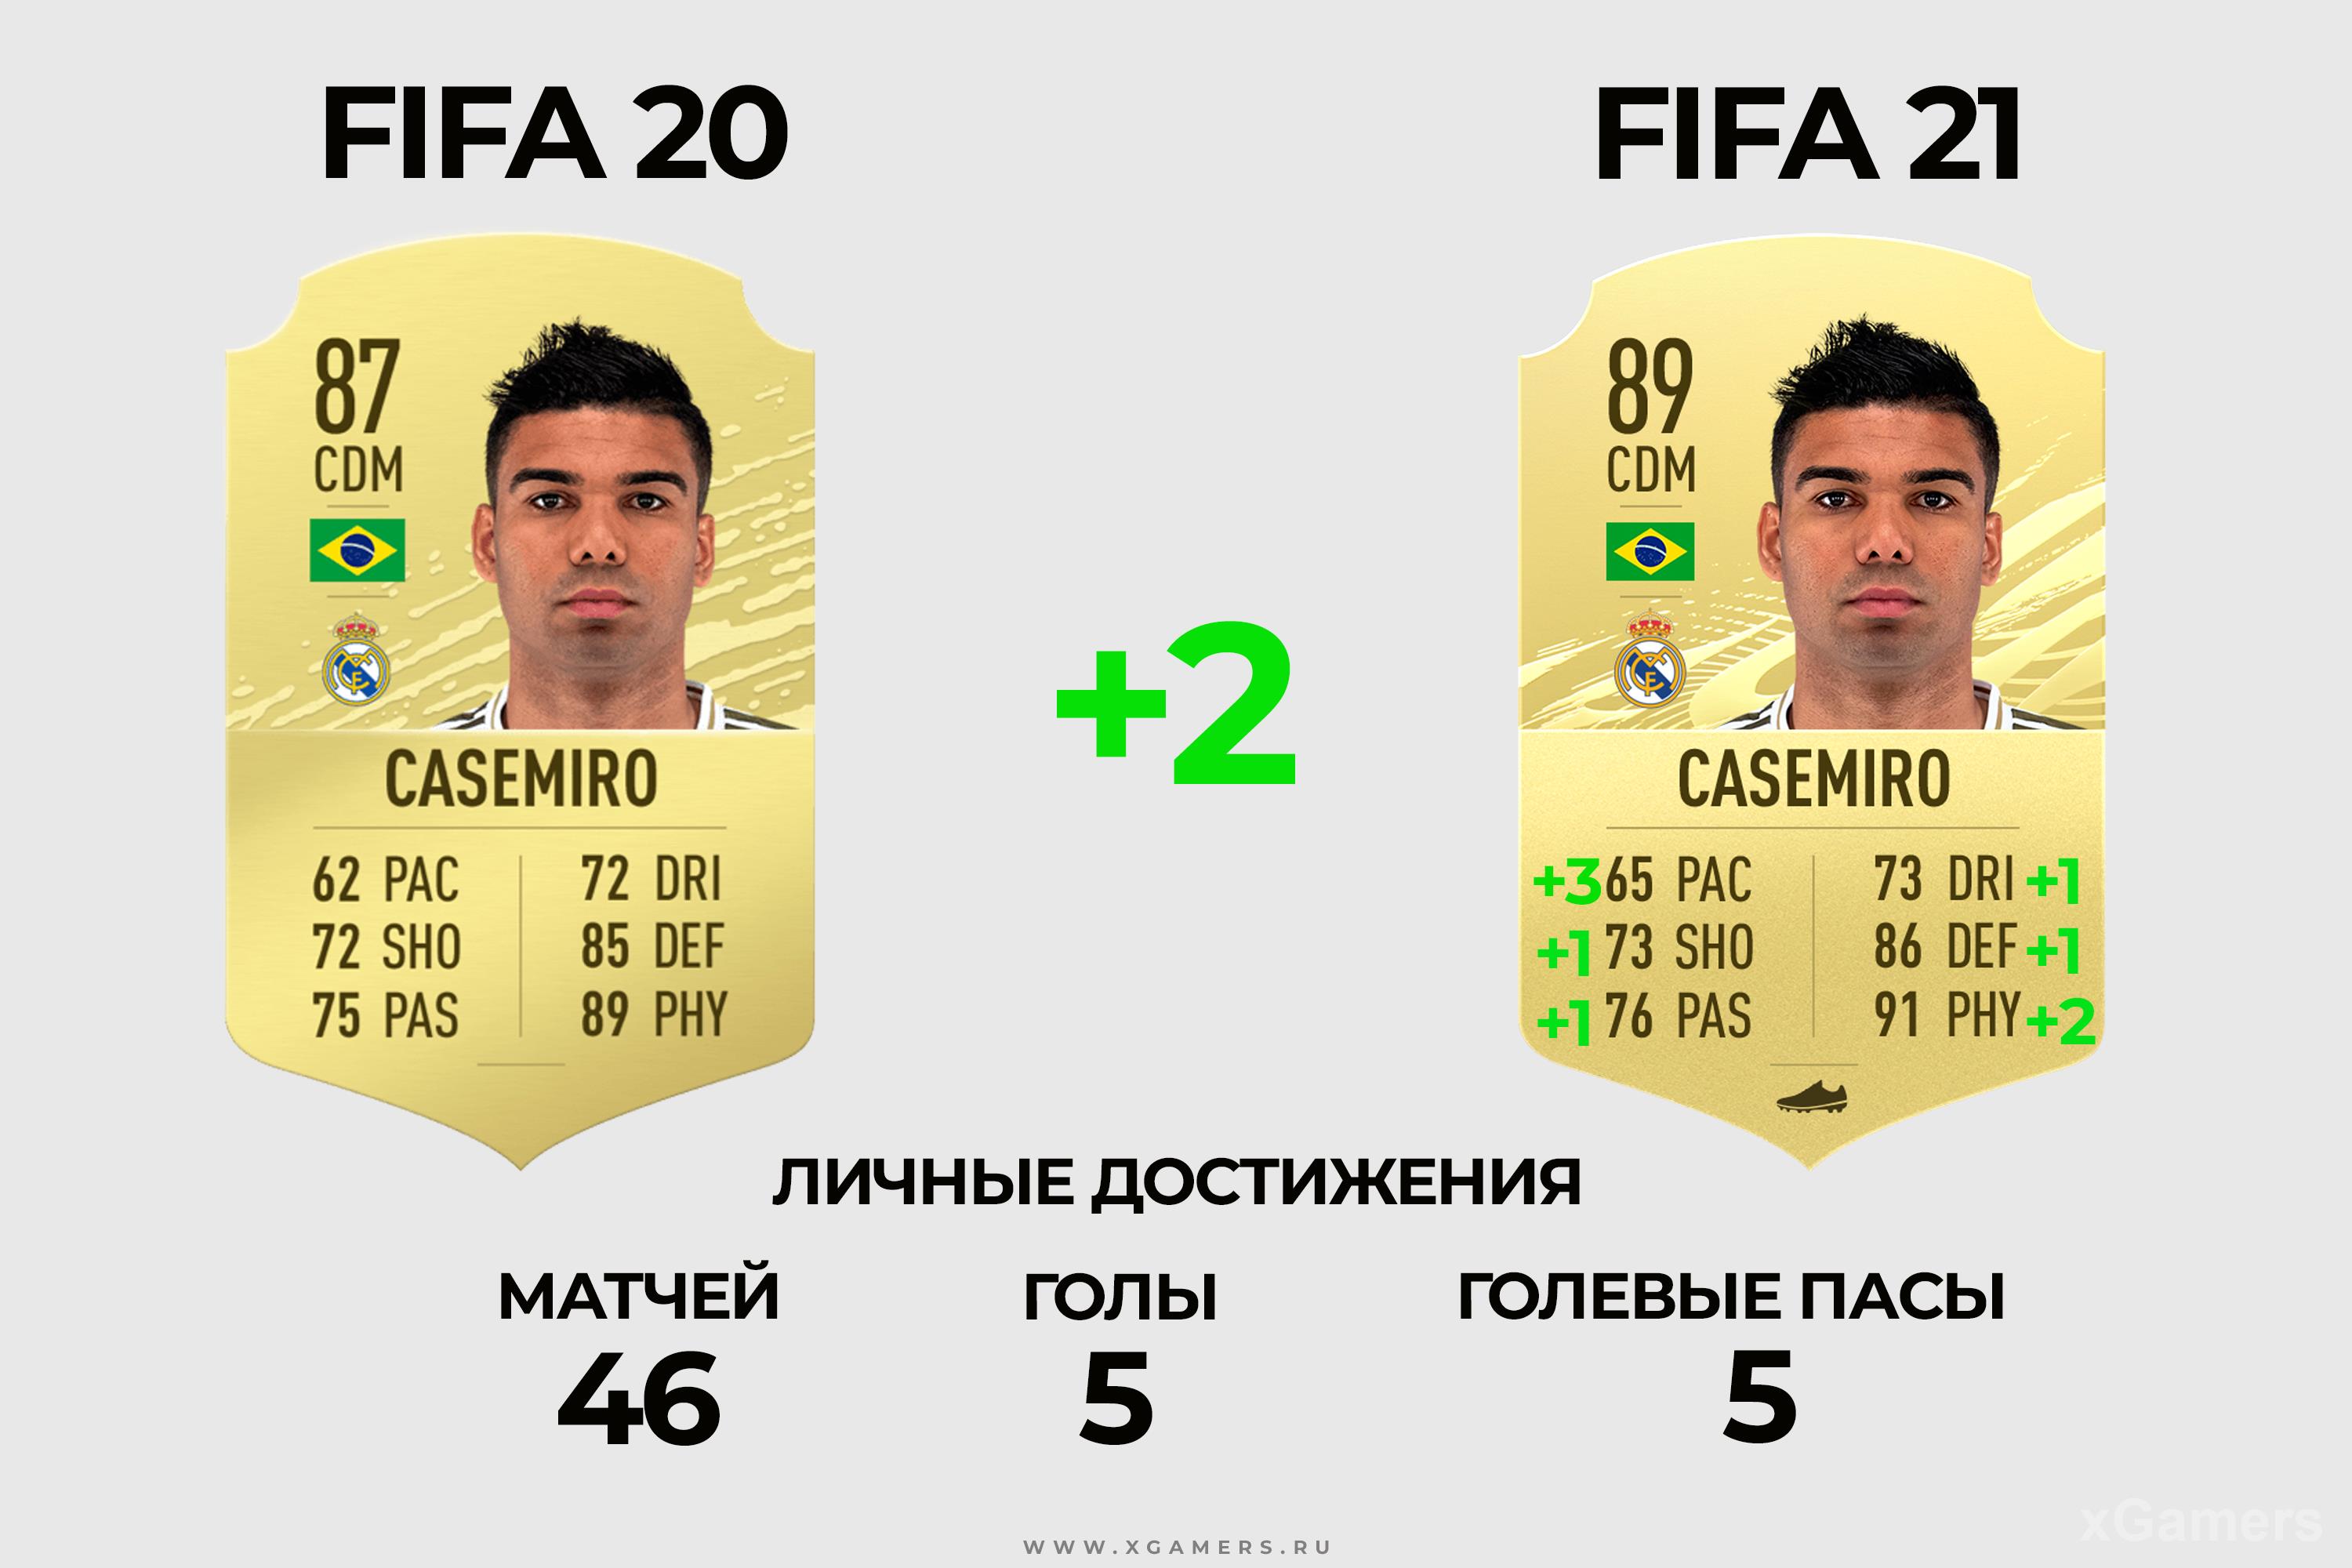 Сравнение карточек: Casemiro 